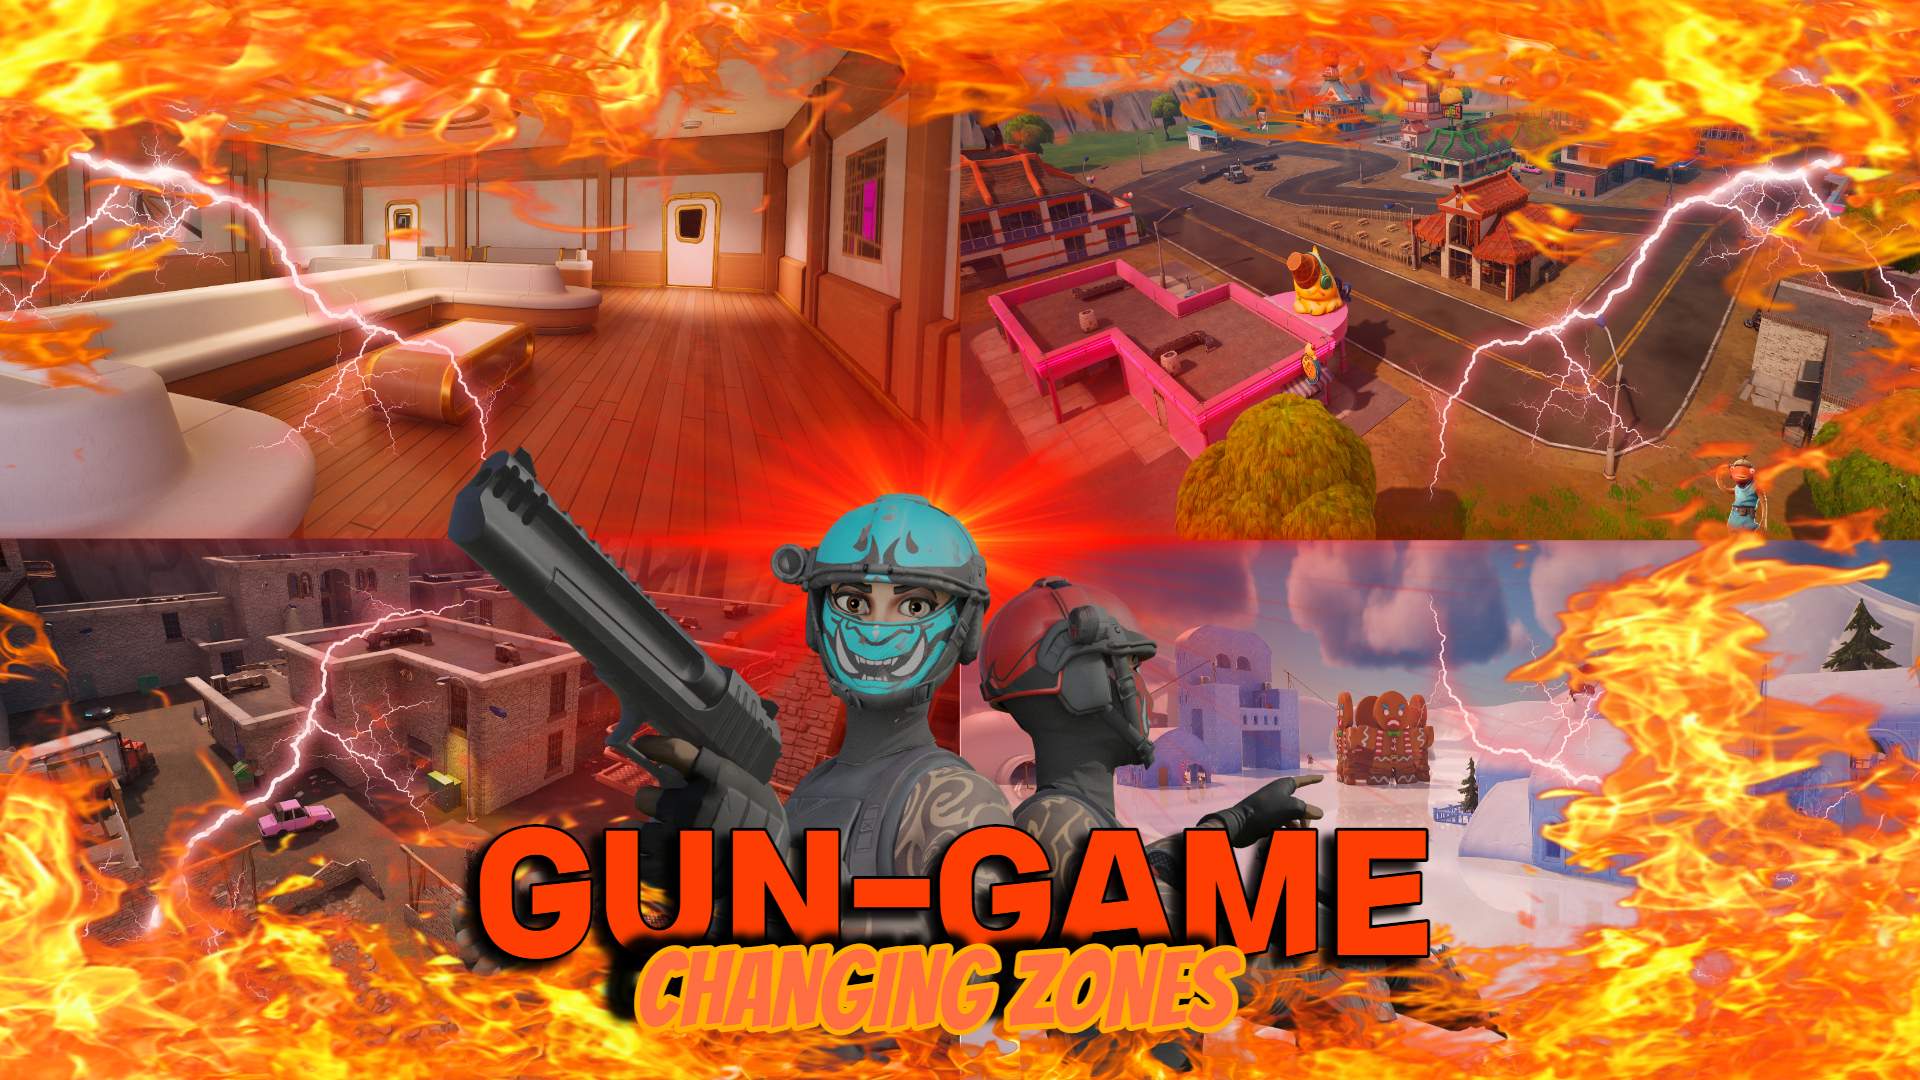 GUN-GAME CHANGING ZONE